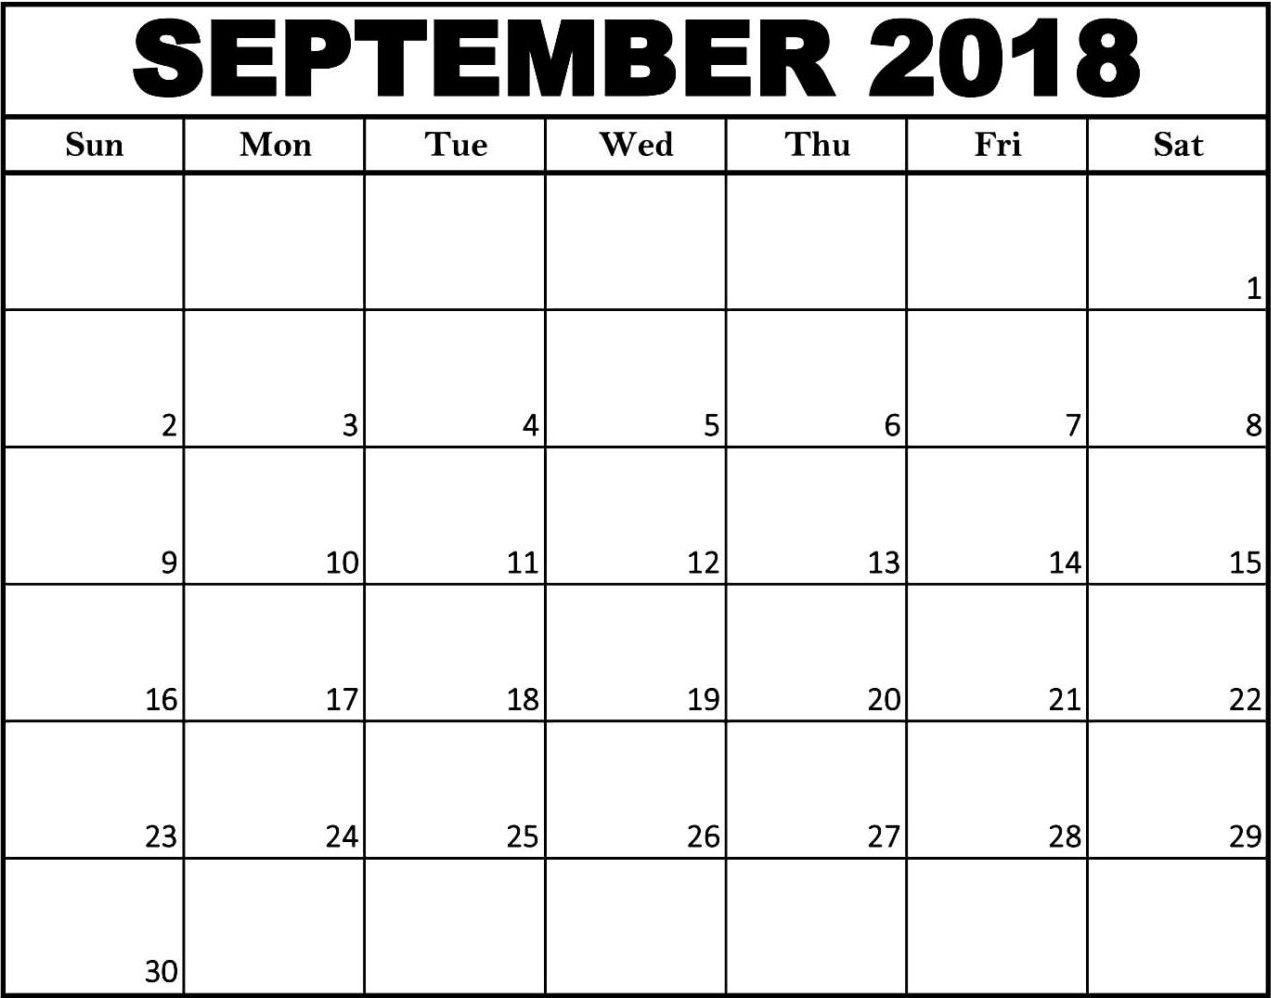 September Calendar 2018 Template Calendar Blank Templates Free